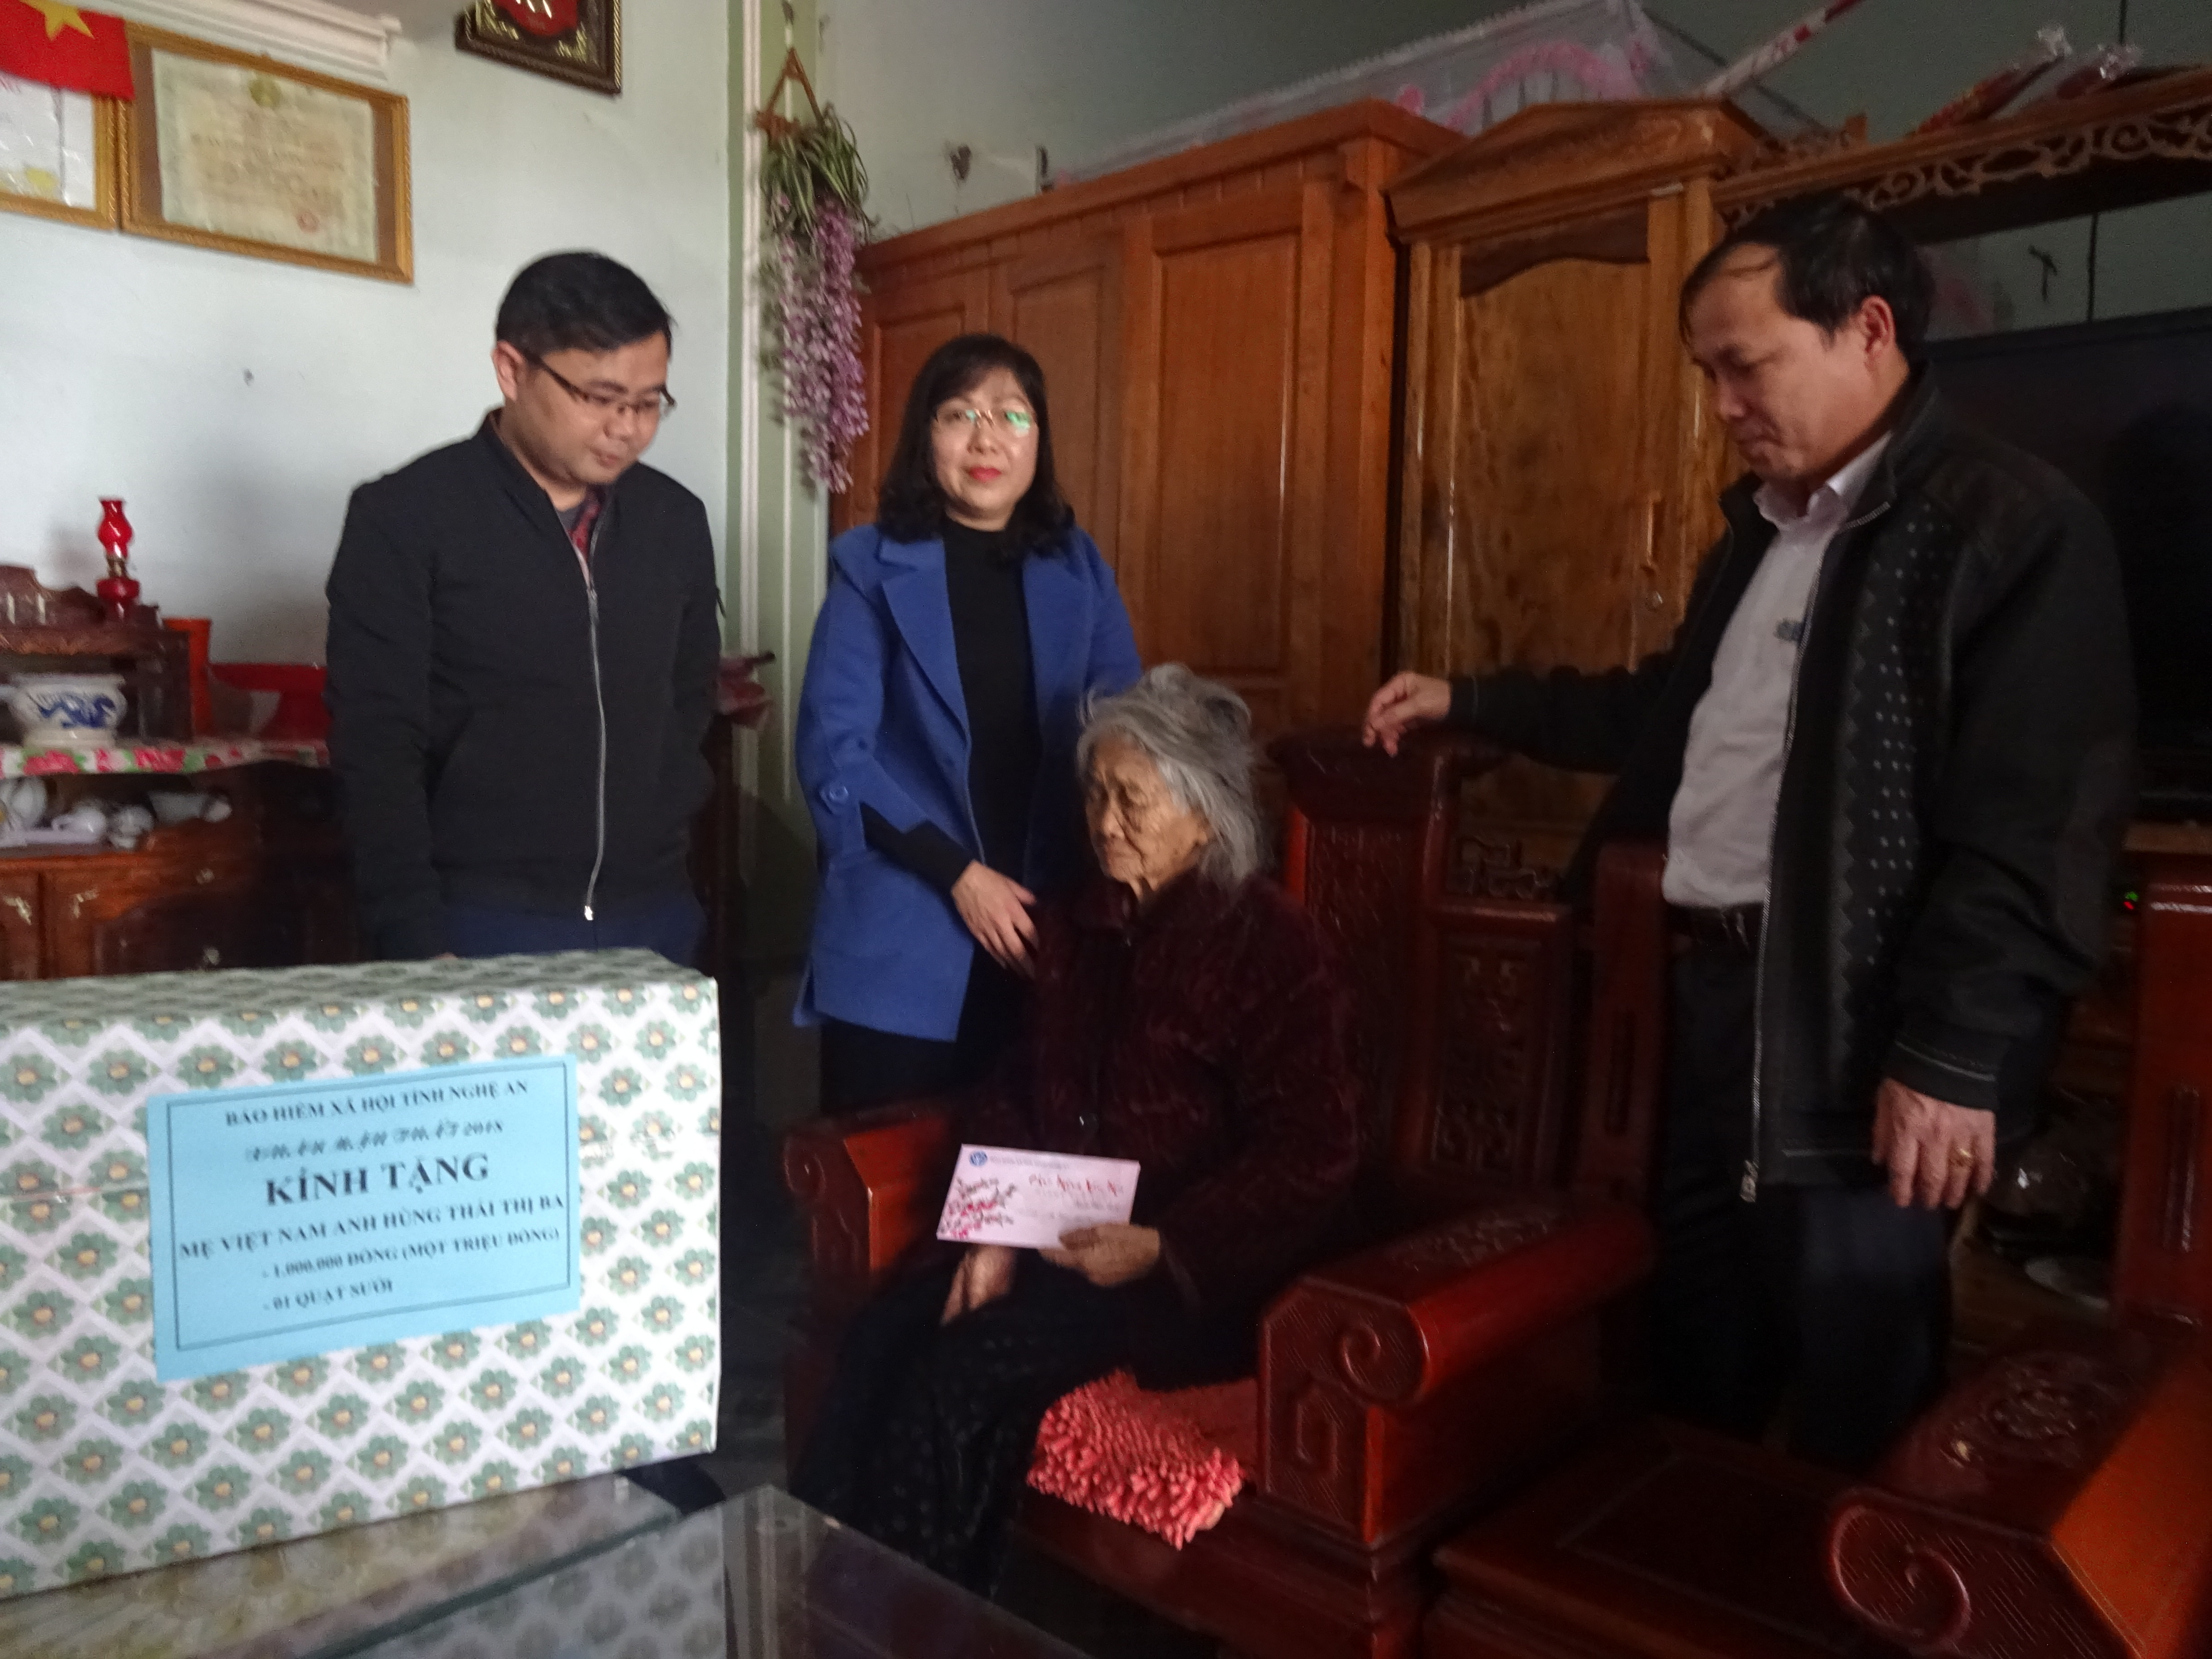 Bảo hiểm xã hội tỉnh tặng quà tết Mẹ Việt Nam anh hùng ở Yên Thành